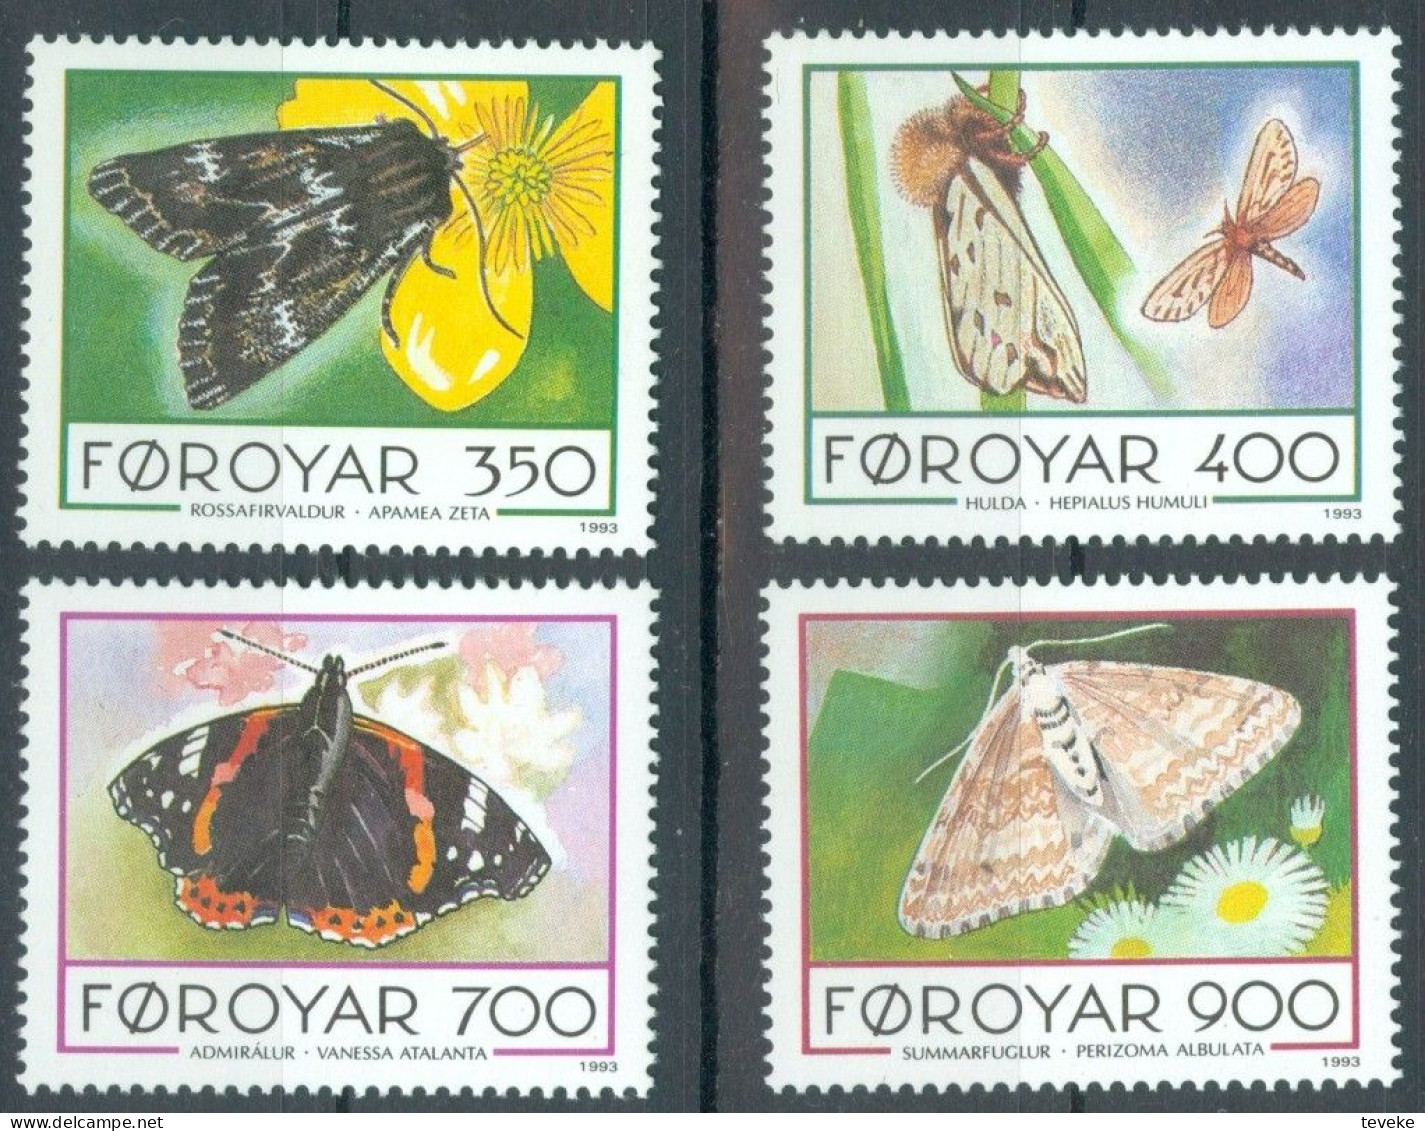 FAEROËR 1993 - MiNr. 252/255 - **/MNH - Fauna - Butterflies - Färöer Inseln